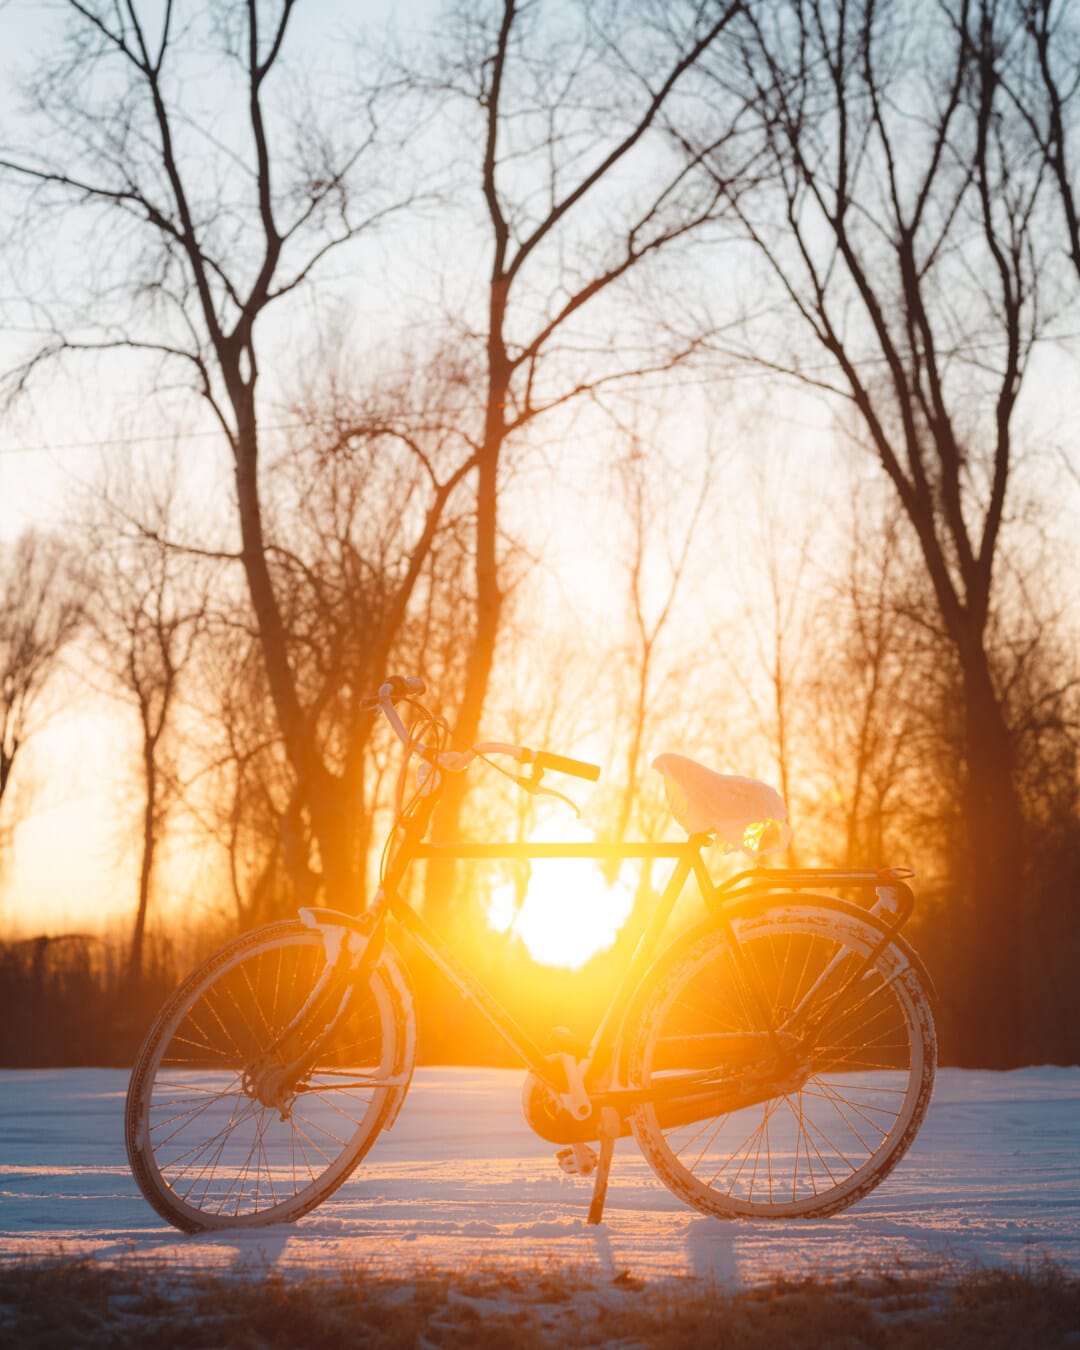 Luz do sol, brilhante, mancha solar, bicicleta, silhueta, luz de fundo, veículo, amanhecer, pôr do sol, bom tempo